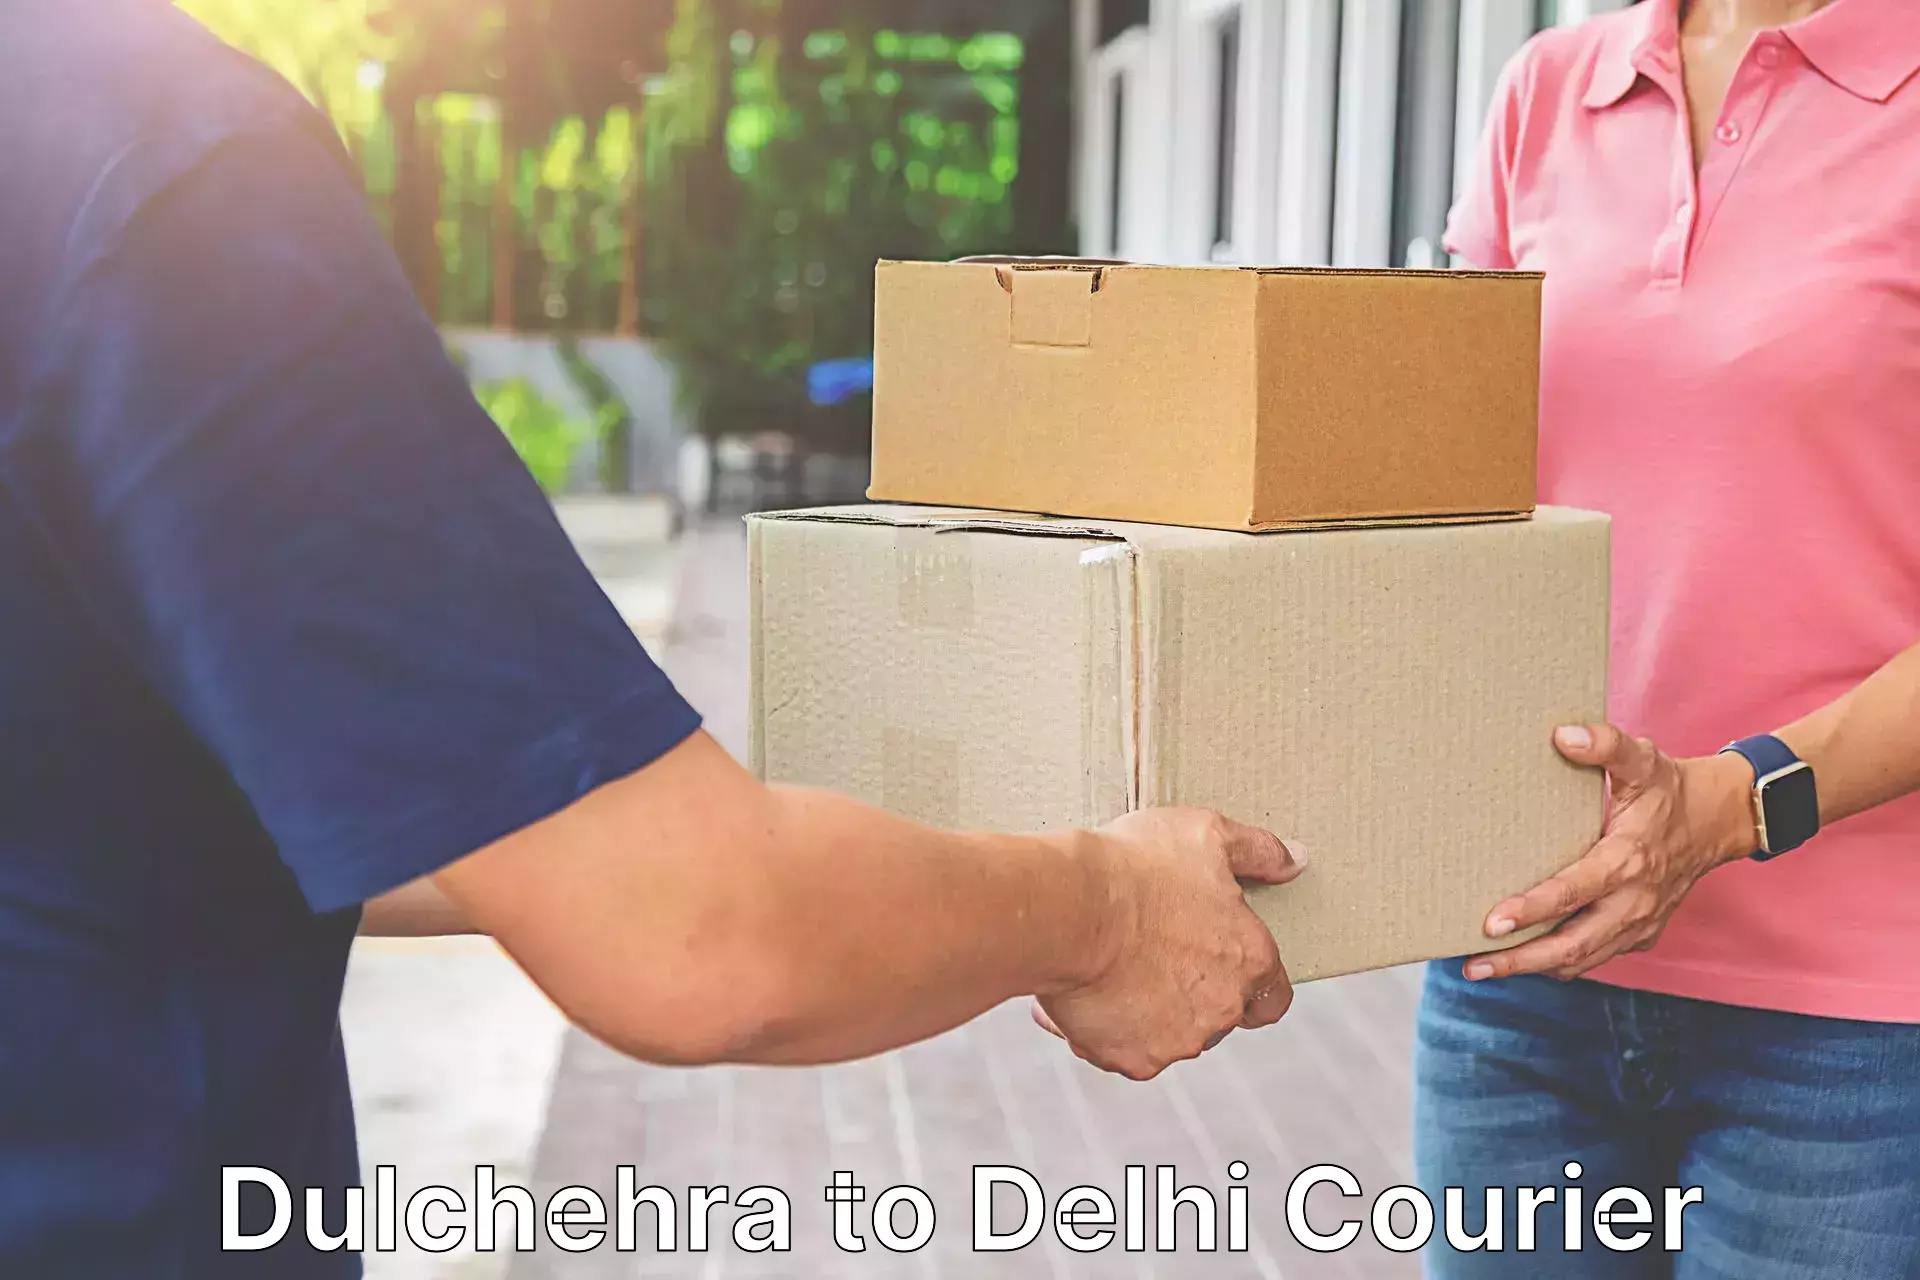 Digital courier platforms Dulchehra to NIT Delhi